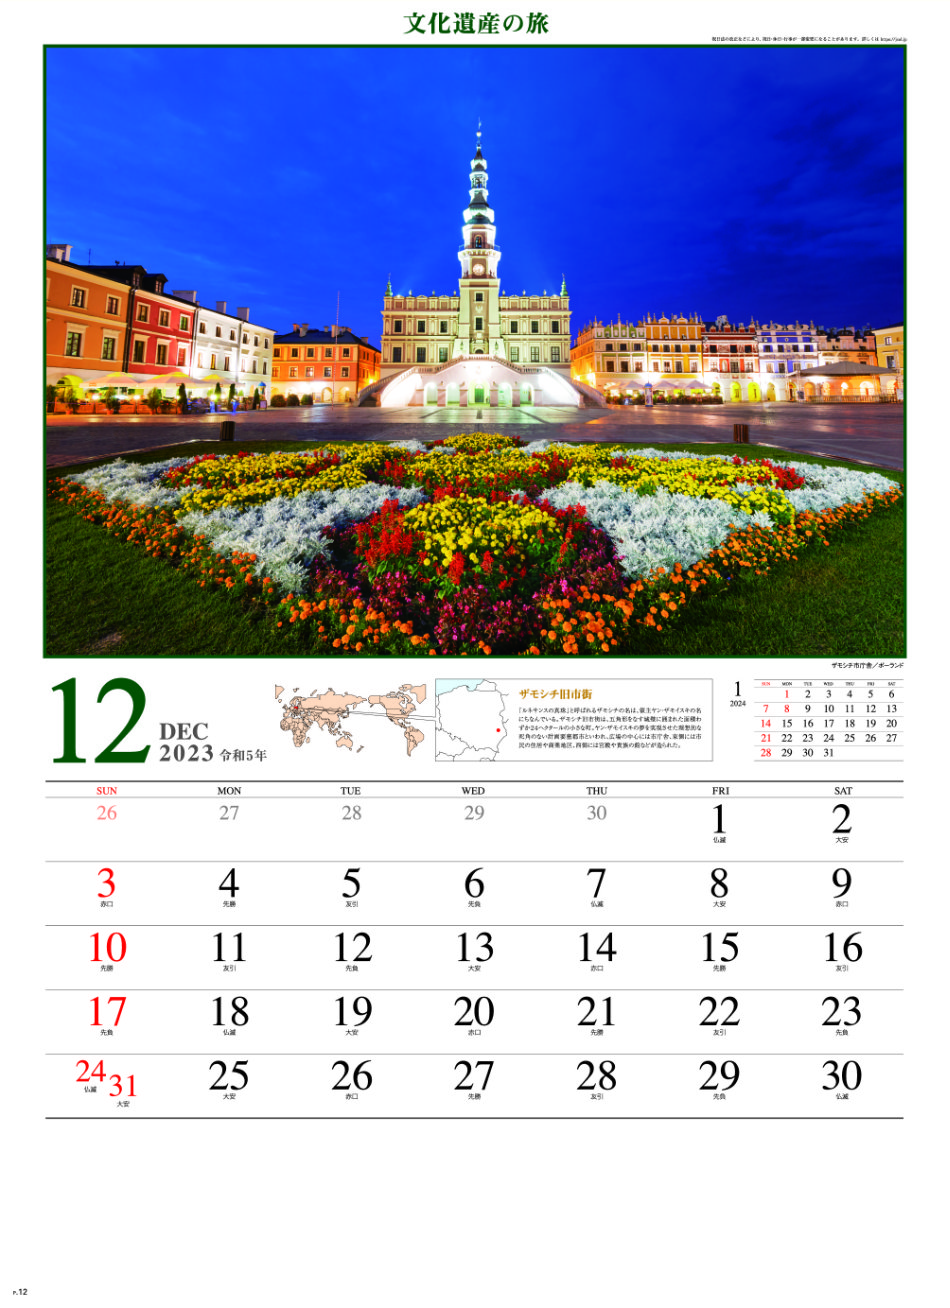 12月 ザモシチ市庁舎(ポーランド) 文化遺産の旅(ユネスコ世界遺産） 2023年カレンダーの画像